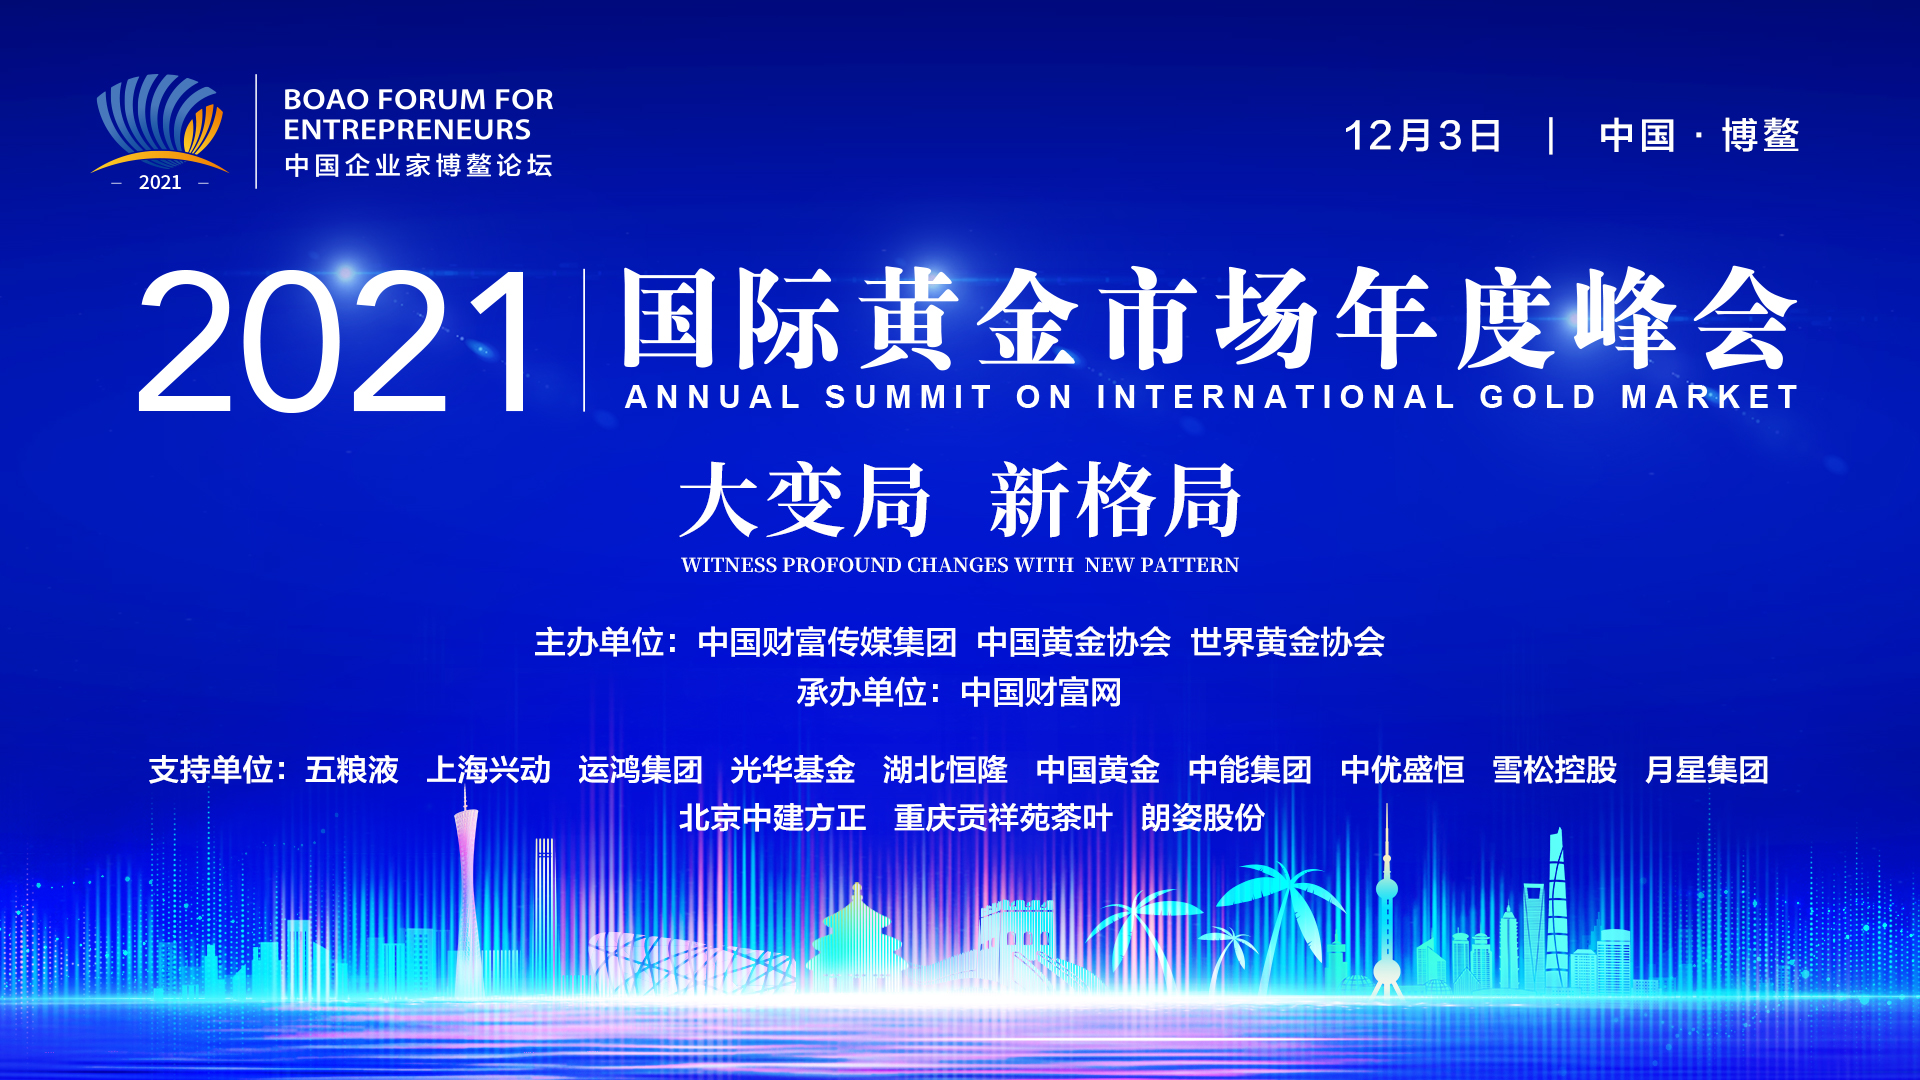 正在直播 |2021中国企业家博鳌论坛·国际黄金市场年度峰会